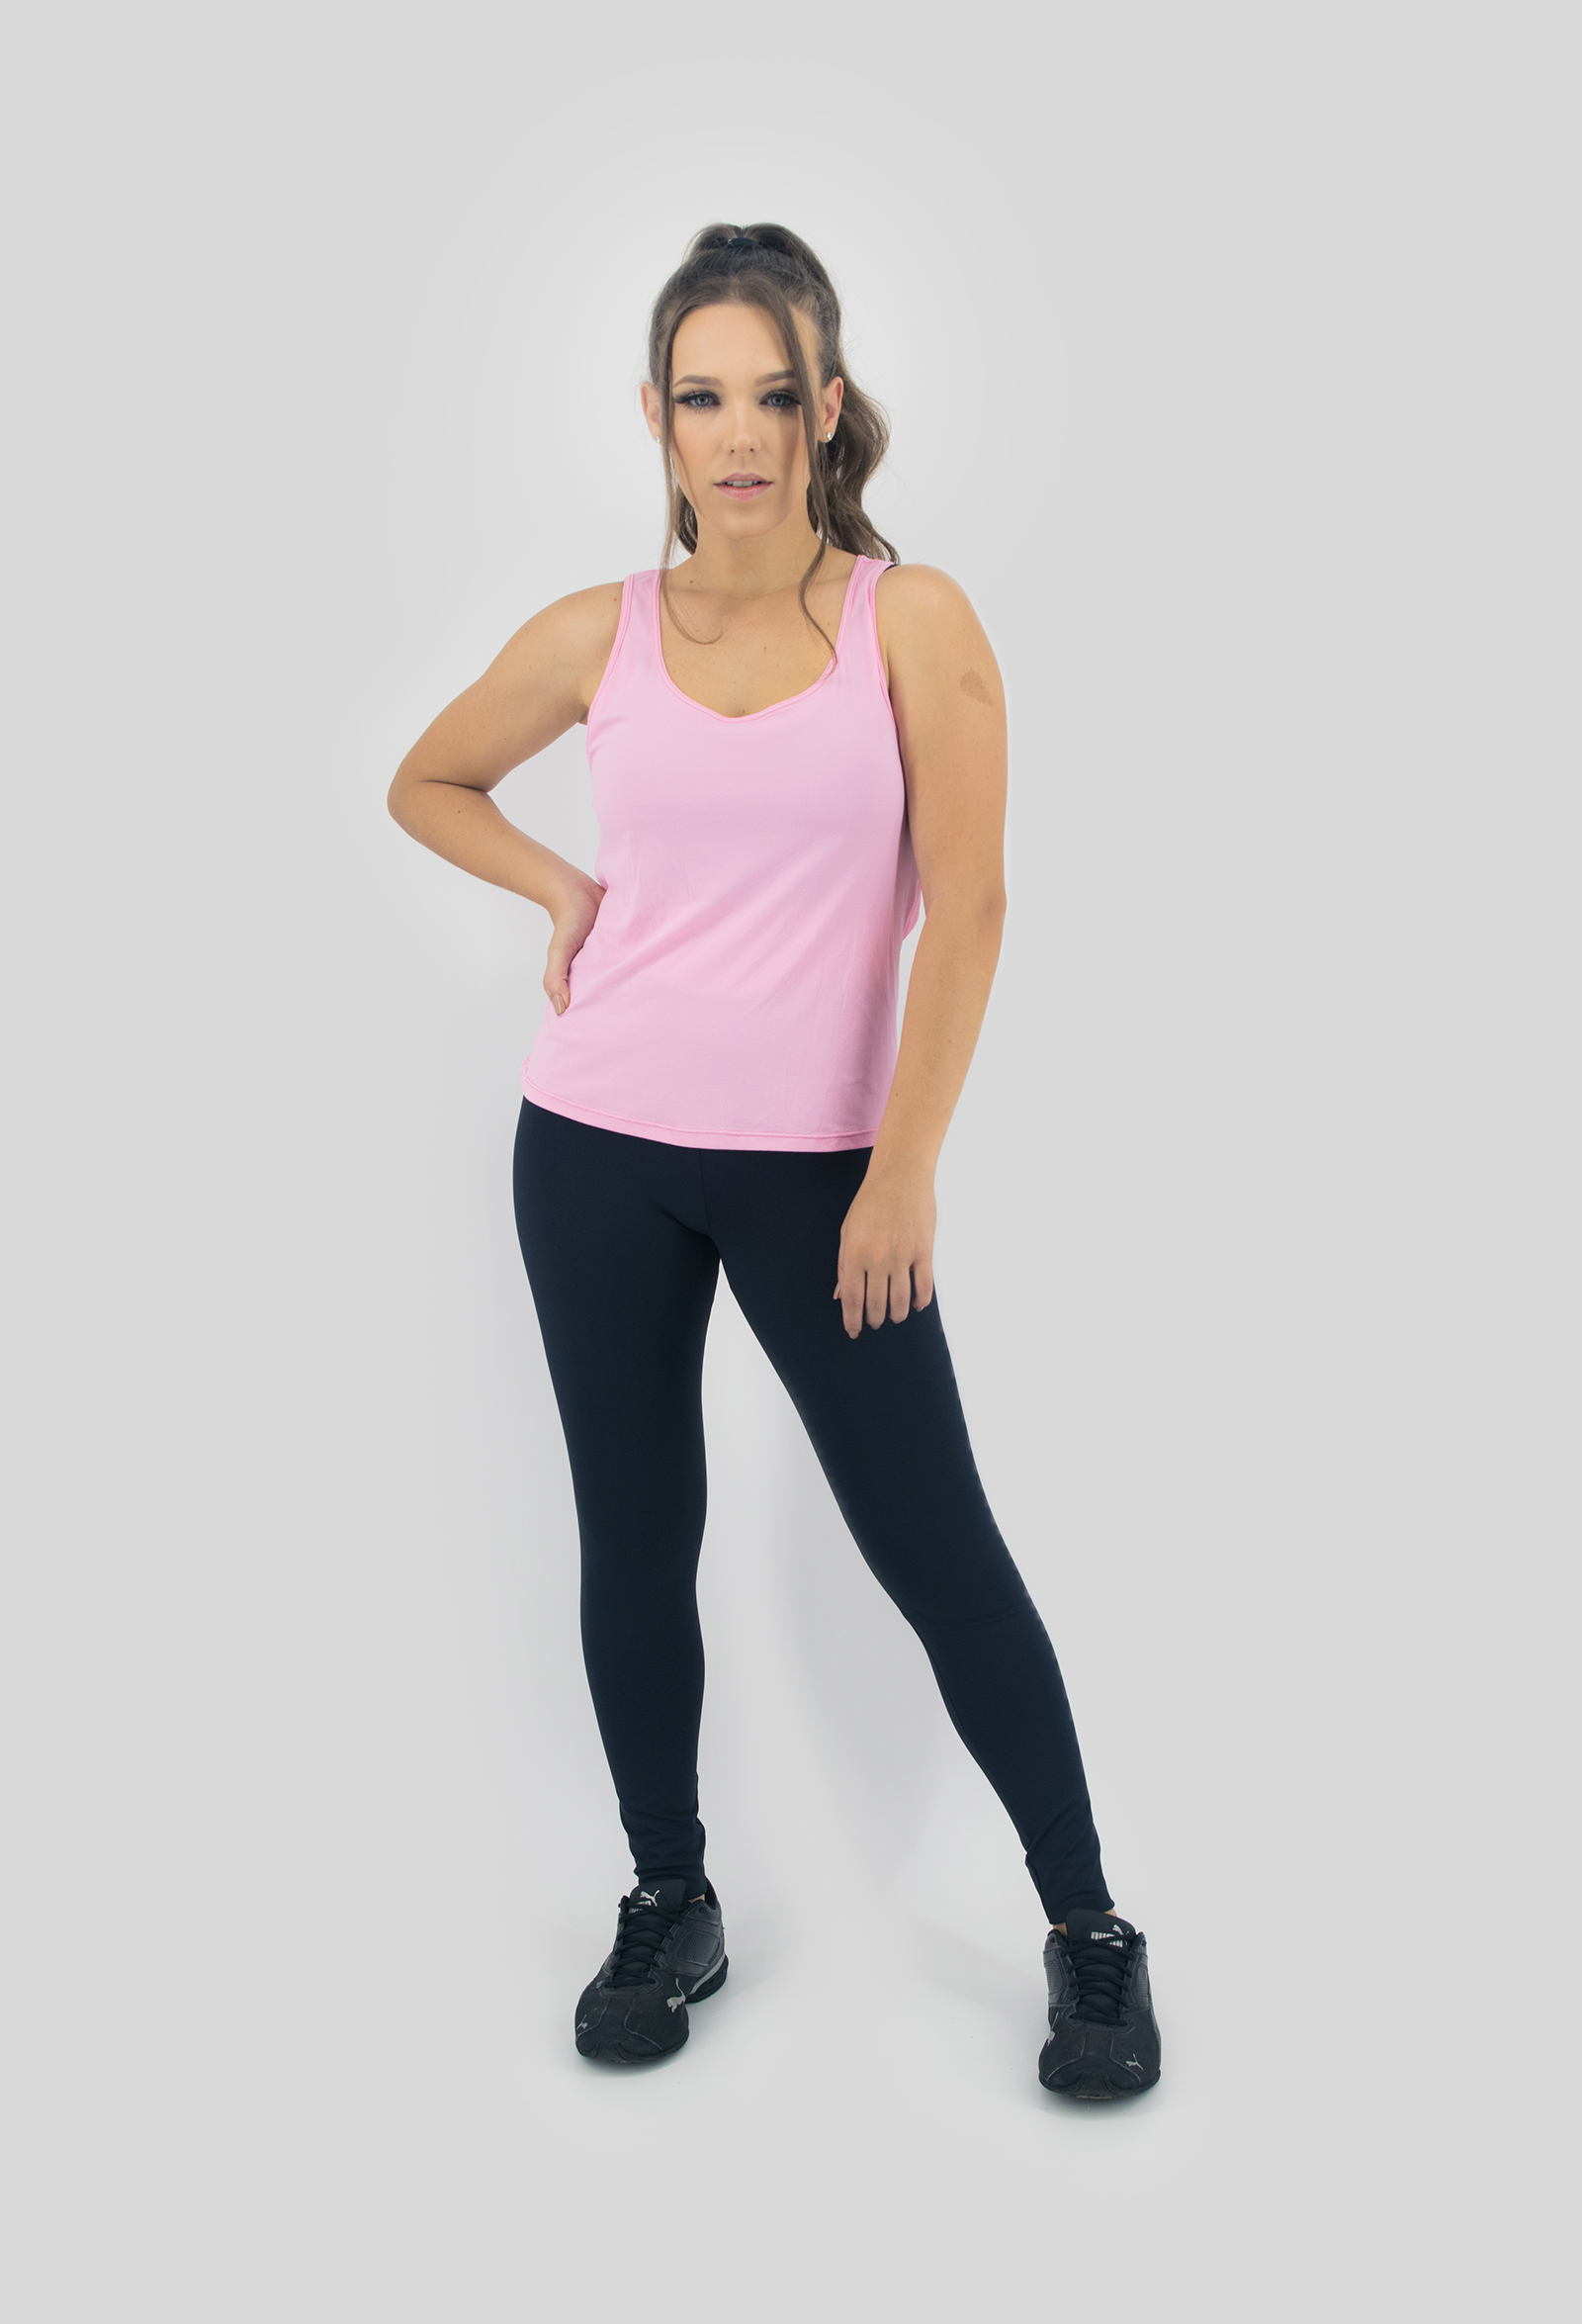 Regata Lux Rosa, Coleção Move Your Body - NKT Fitwear Moda Fitness